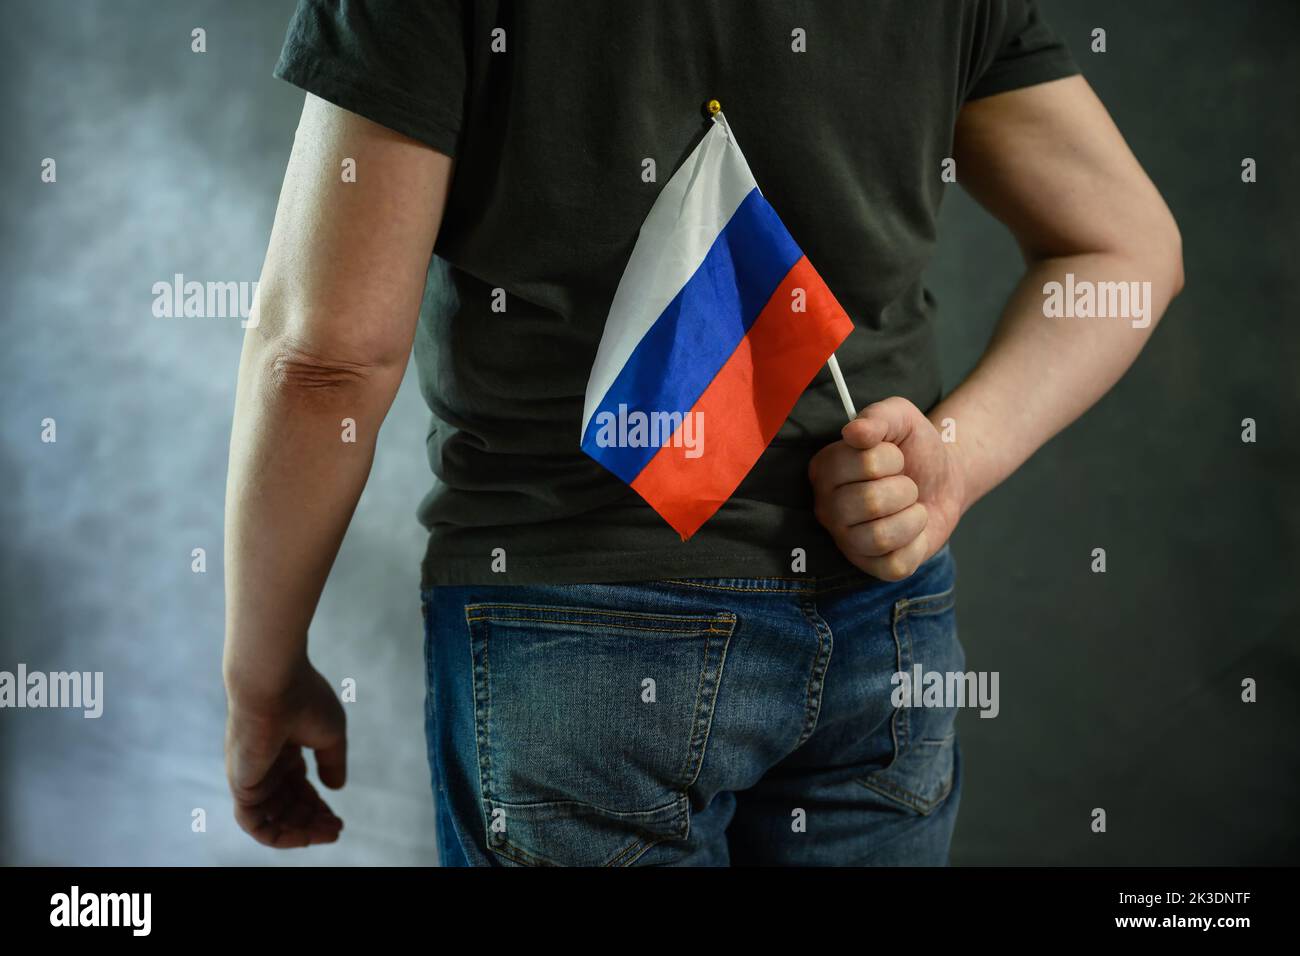 Hombre ocultando la bandera rusa detrás de su espalda, persona que ama a Rusia sobre fondo gris. Concepto de rusofobia, miedo, guerra de Ucrania, odio, protesta, verdad, Foto de stock